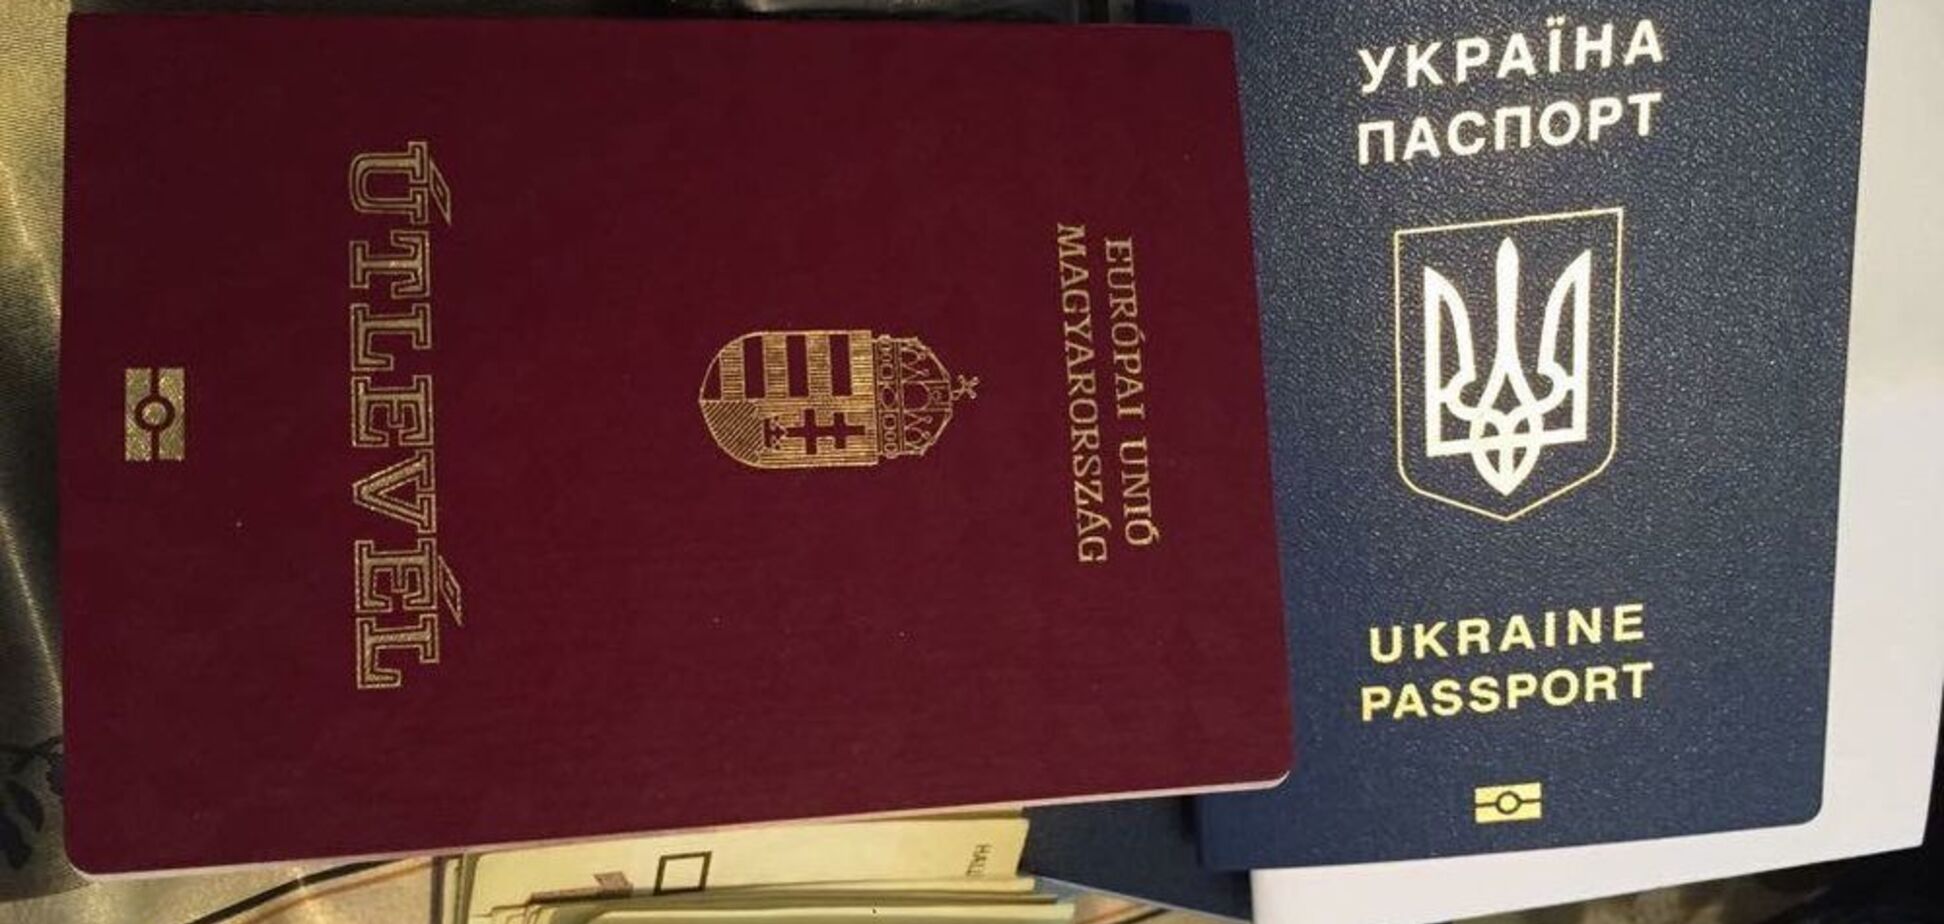 Скандал с венгерскими паспортами: чиновники Закарпатья пошли на отчаянный шаг